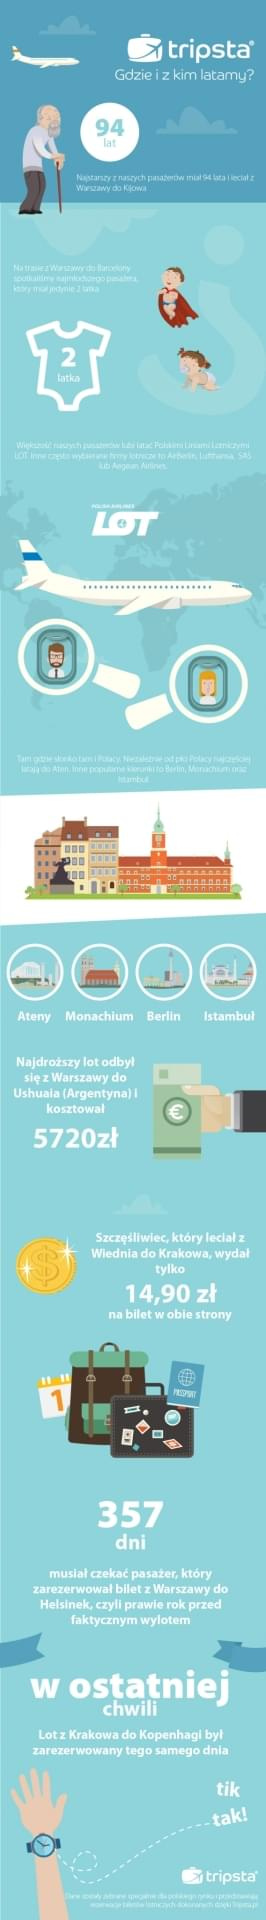 Internetowe biuro podróży Tripsta.pl podsumowało ostatnie dwa lata rezerwacji dokonywanych przez Polaków za pośrednictwem strony www oraz jej wersji mobilnej. Wyniki są ciekawe. #latanie #podróże #samolot #Tripsta